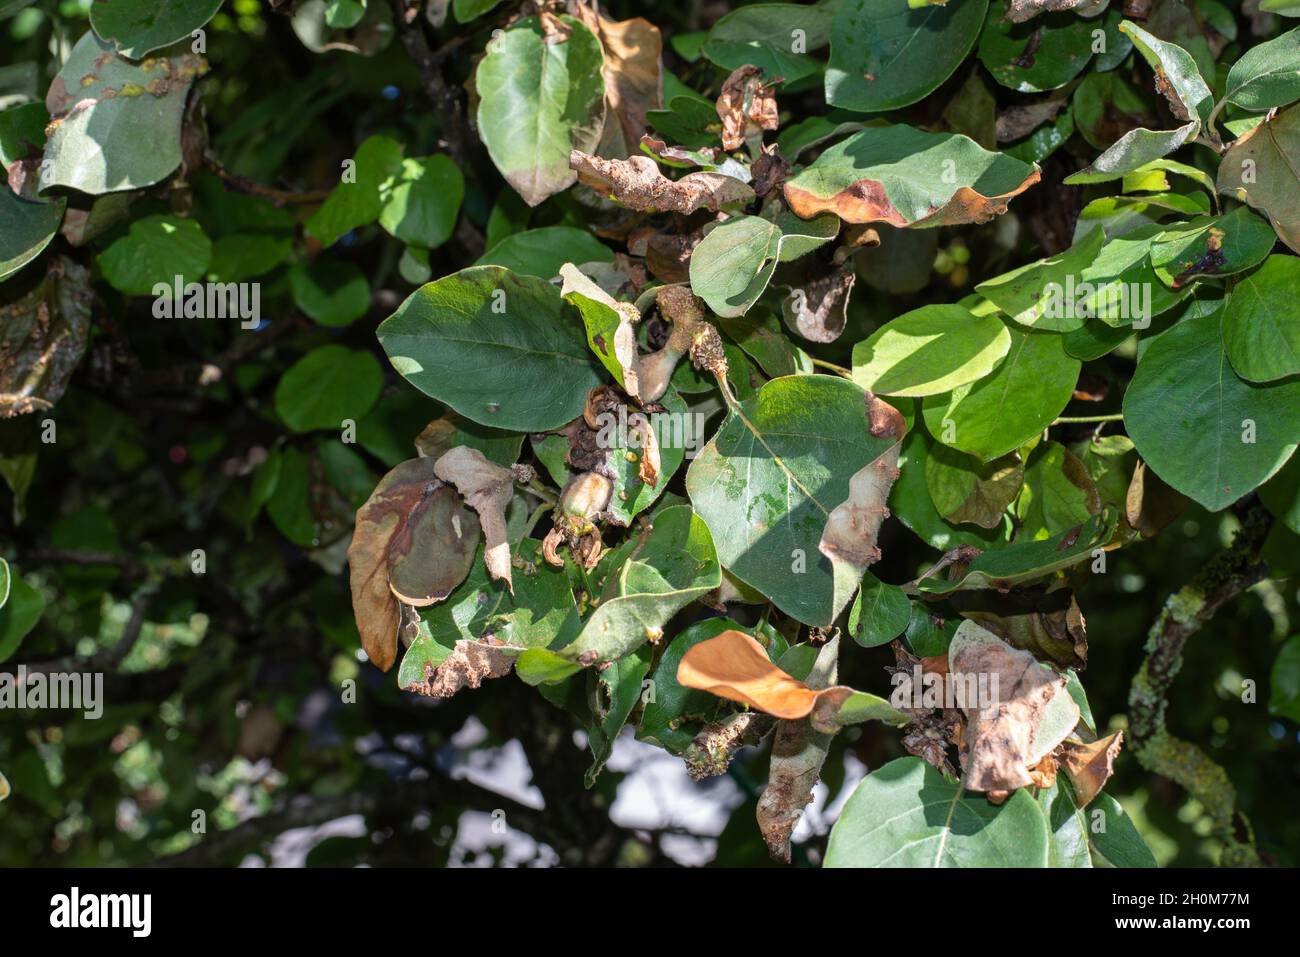 primer plano de las hojas marrones infectadas de un árbol de membrillo Foto de stock